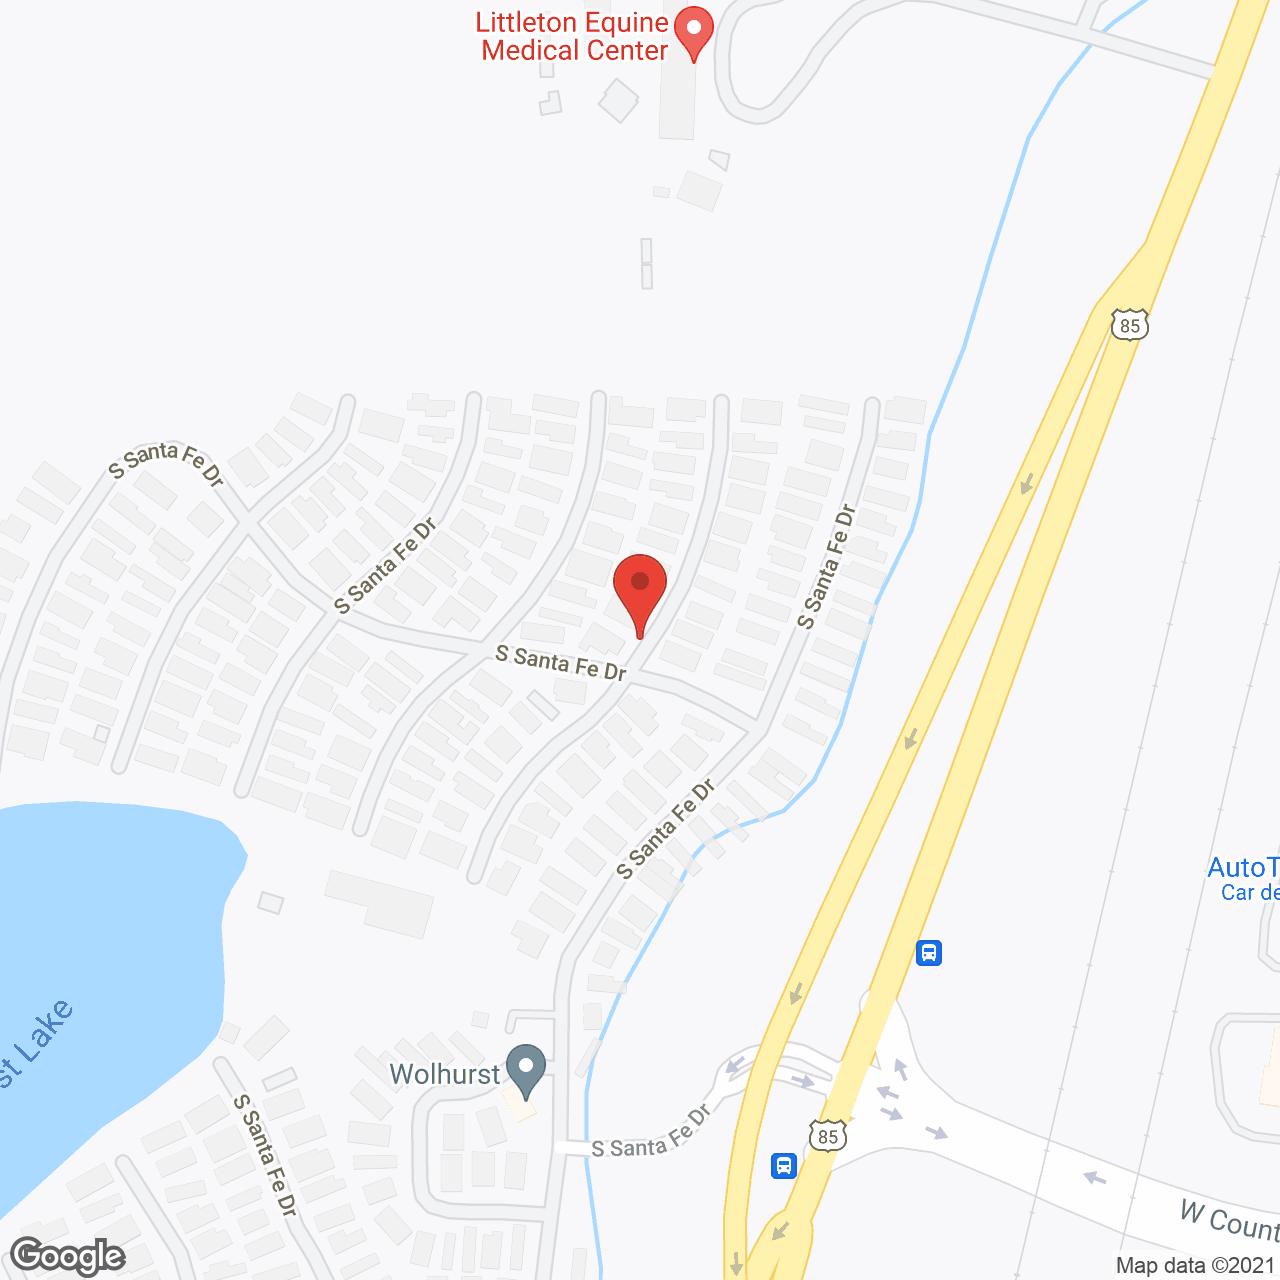 Wolhurst Adult Community in google map